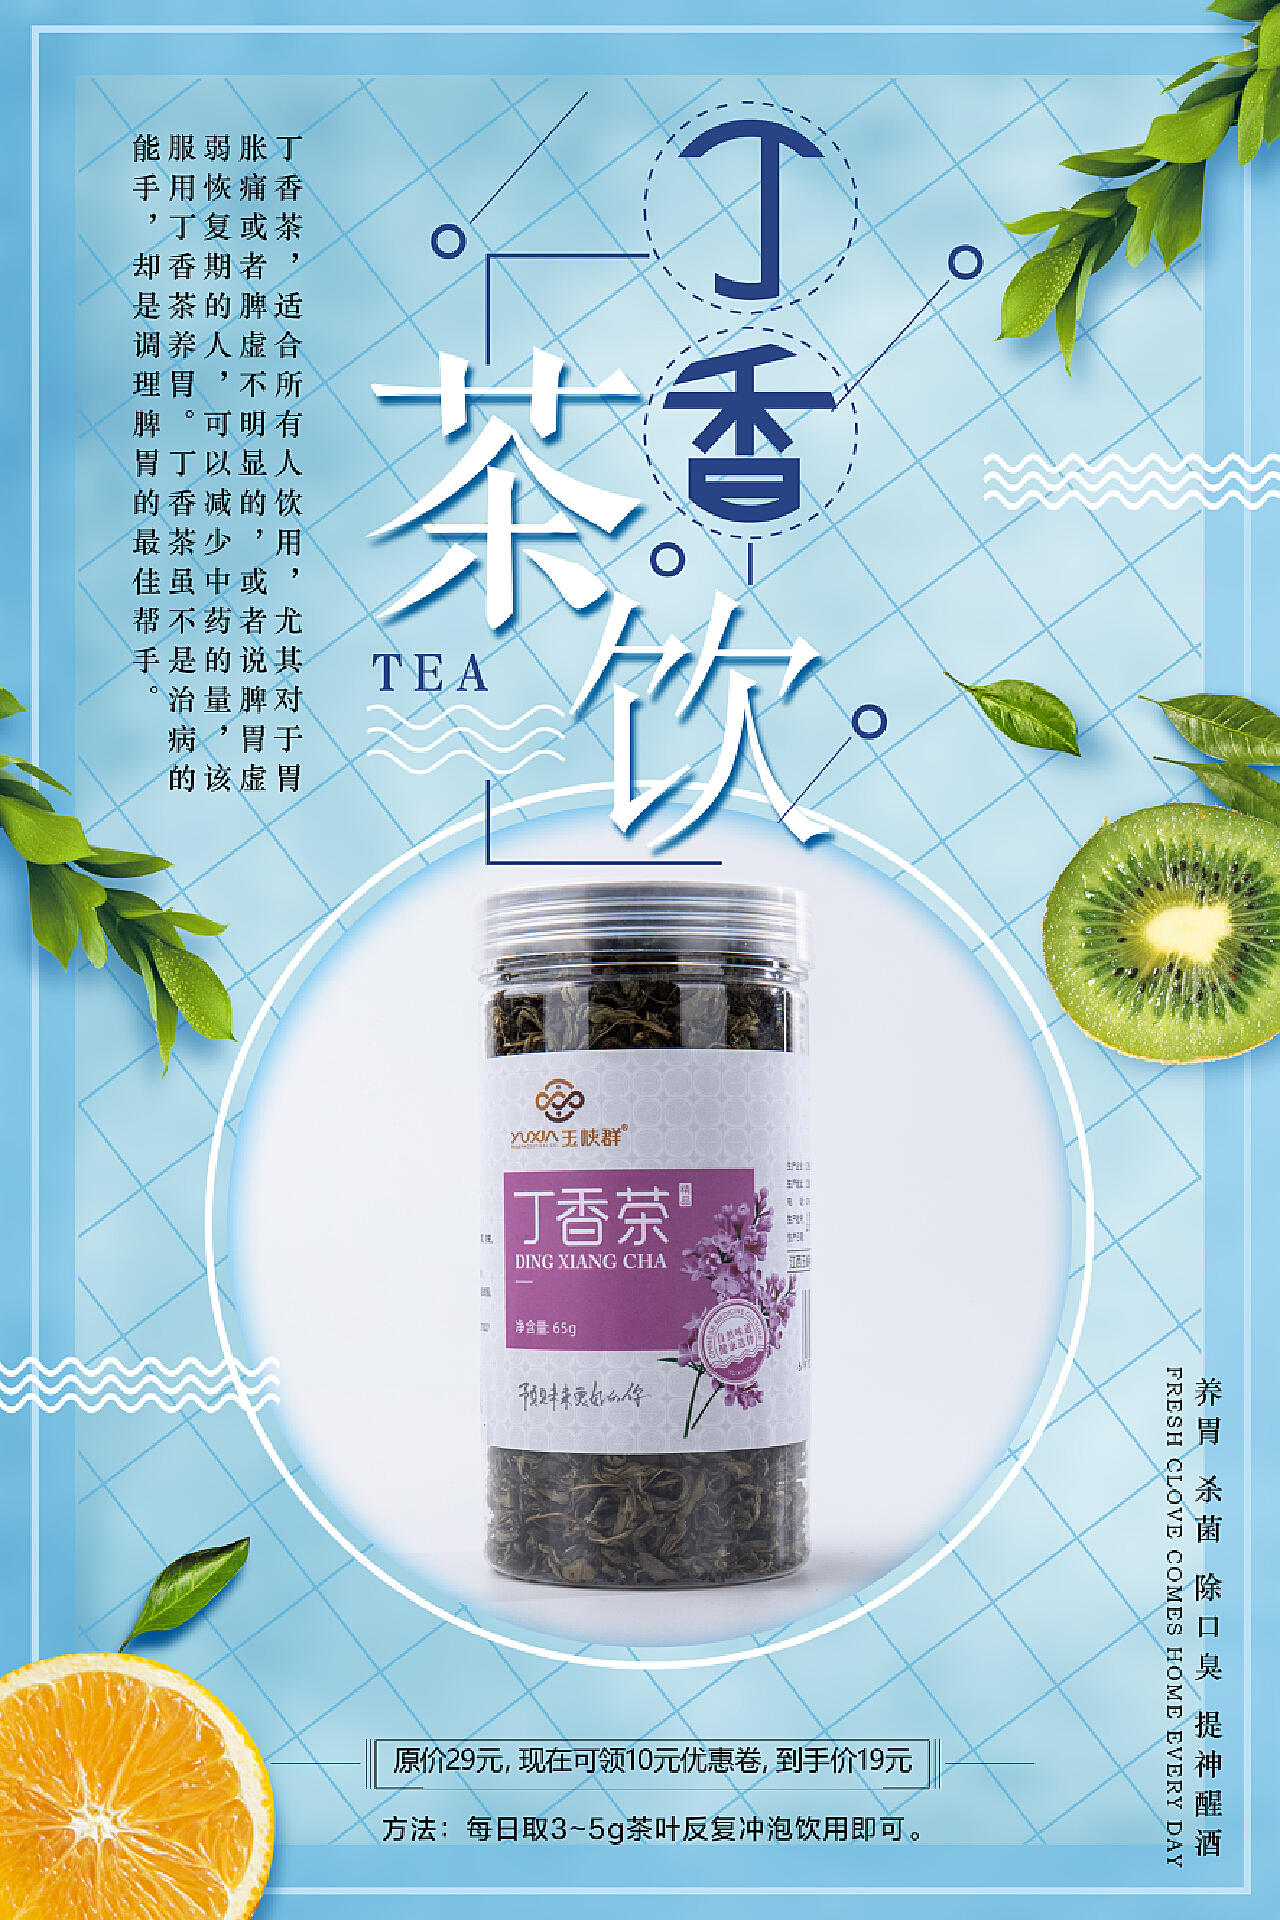 【舒渭】丁香沙棘麦芽茶 12味组合袋泡茶三角茶包花茶工厂代加工-阿里巴巴